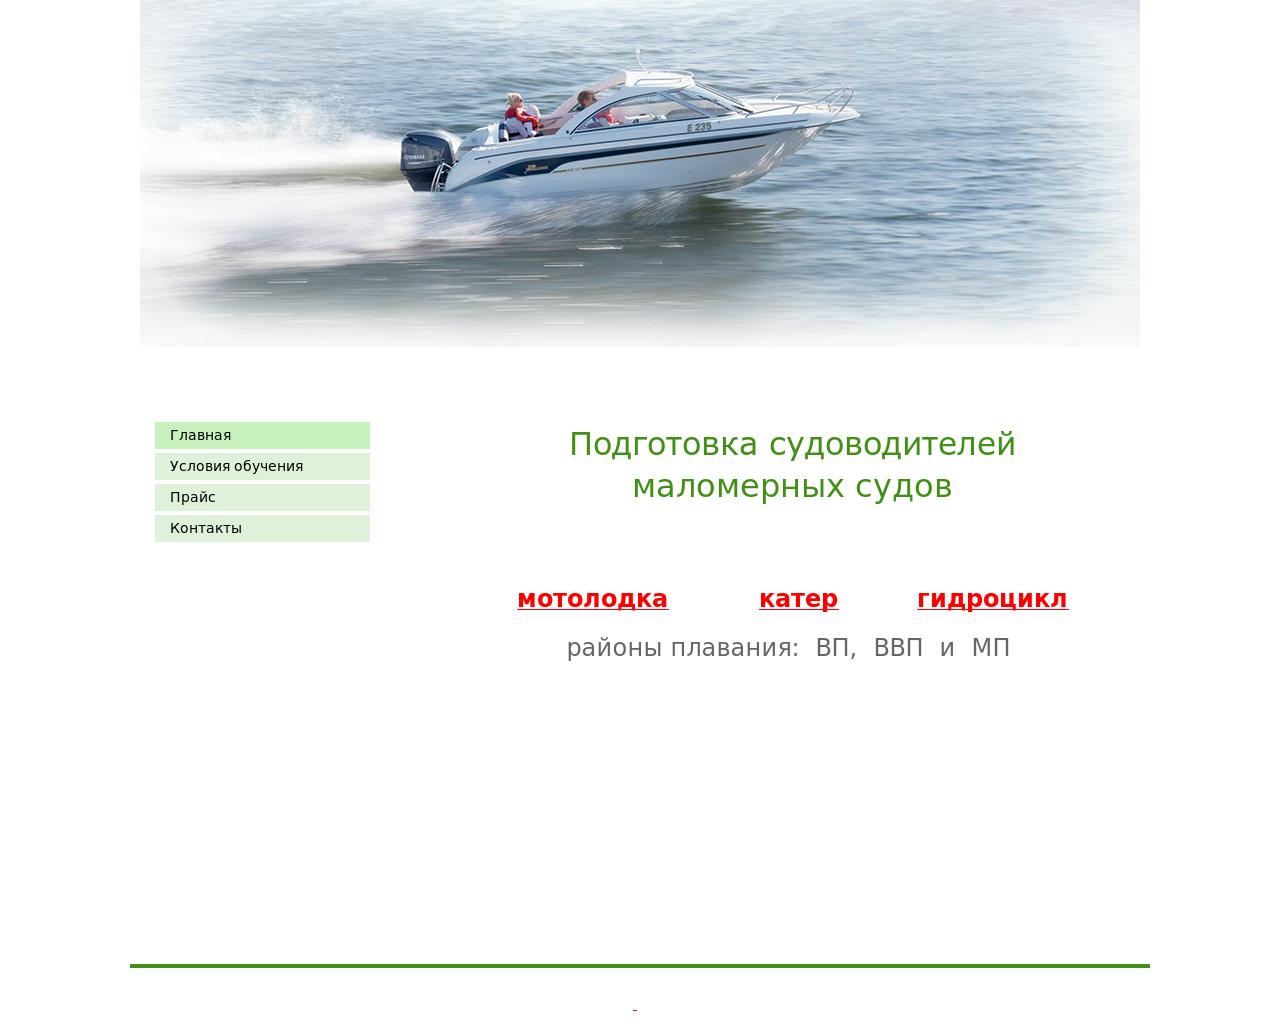 Изображение сайта akvagar.ru в разрешении 1280x1024